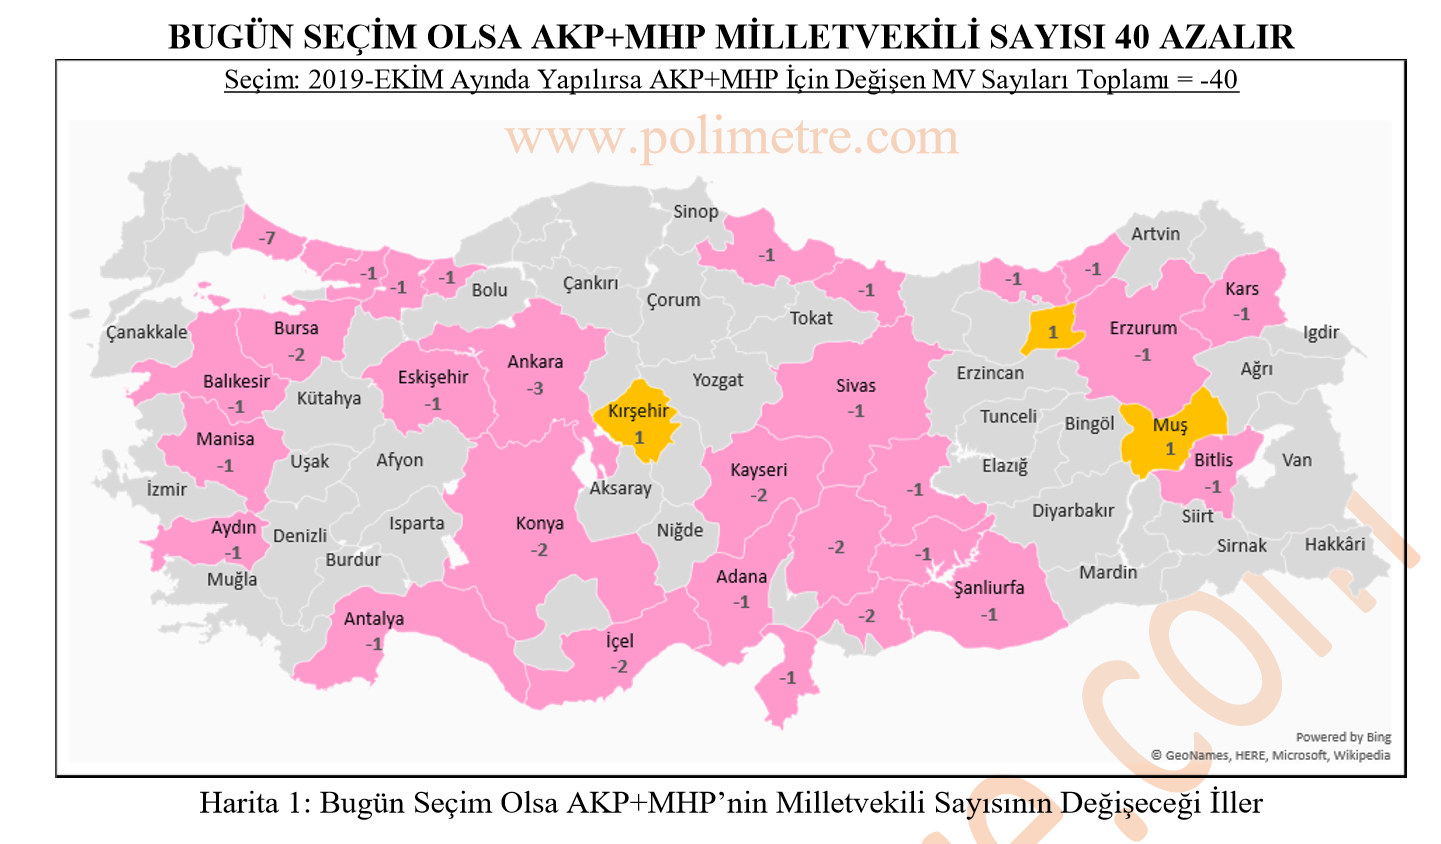 Polimetre çalışması: Bugün seçim olsa AKP 62 vekil kaybediyor, CHP 46 vekil fazla çıkarıyor - Resim: 4